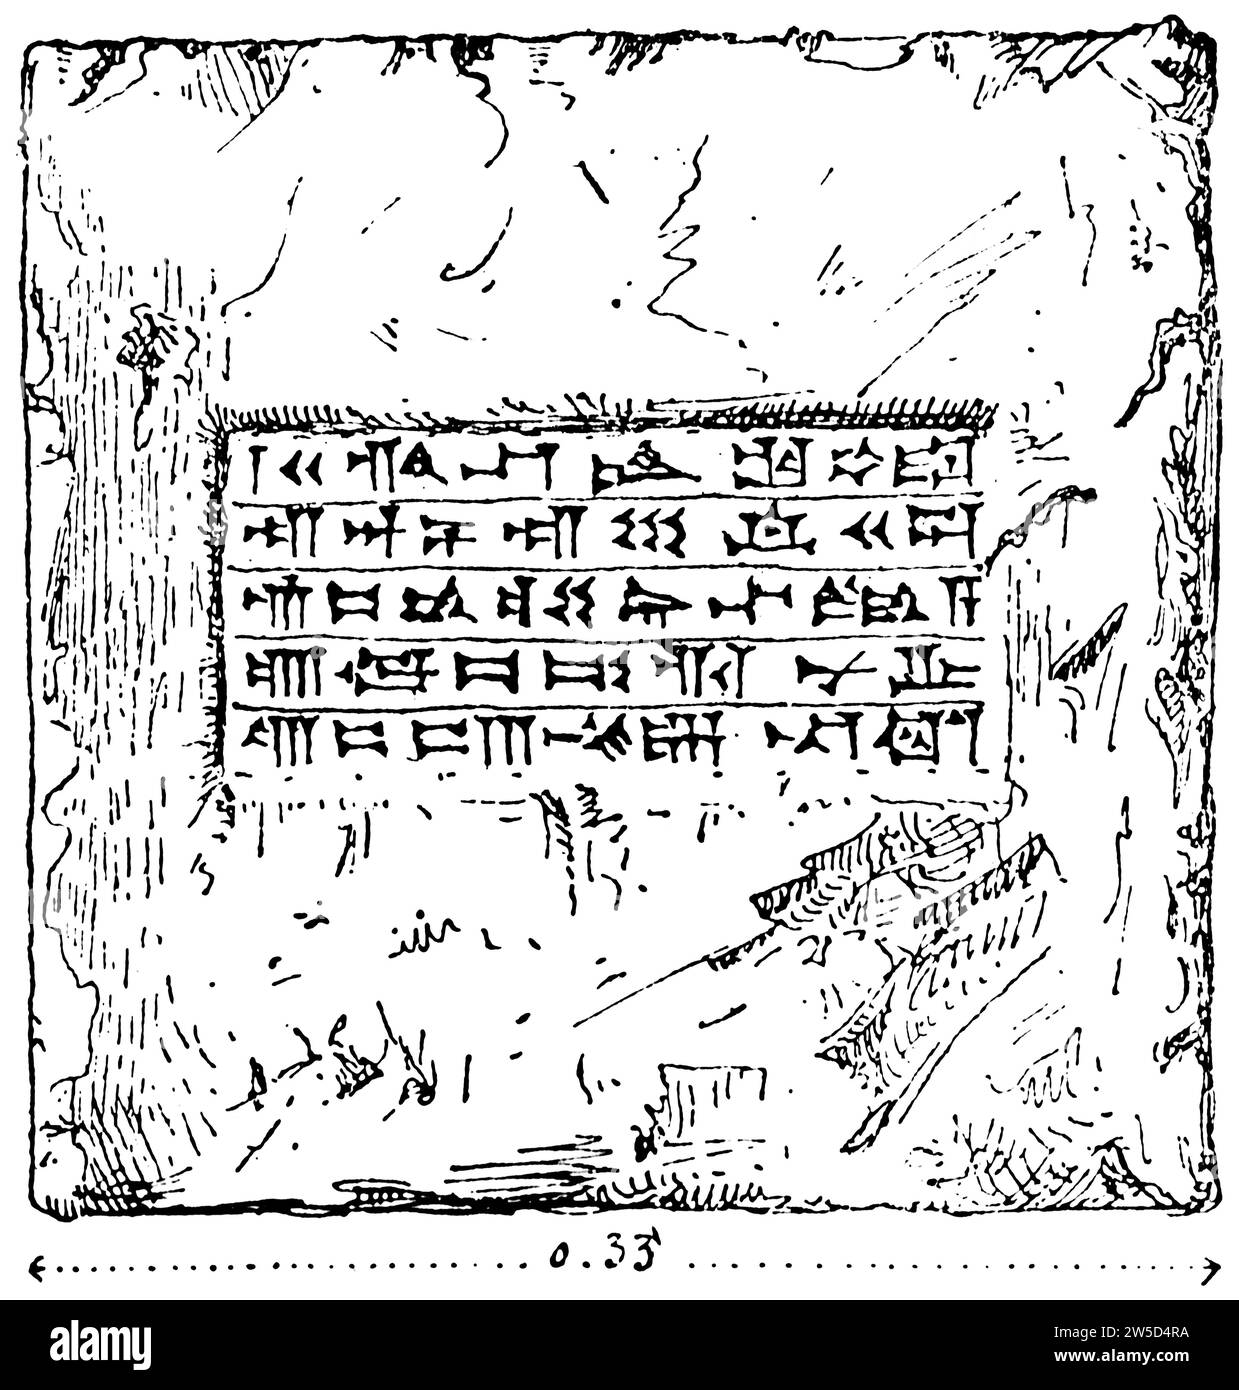 Brique d'un monument de Khorsabad relatant les actes de Sargon, roi d'Assyrie, fondateur de Ninive Khorsabat, antiquité, illustration historique 1886 Banque D'Images